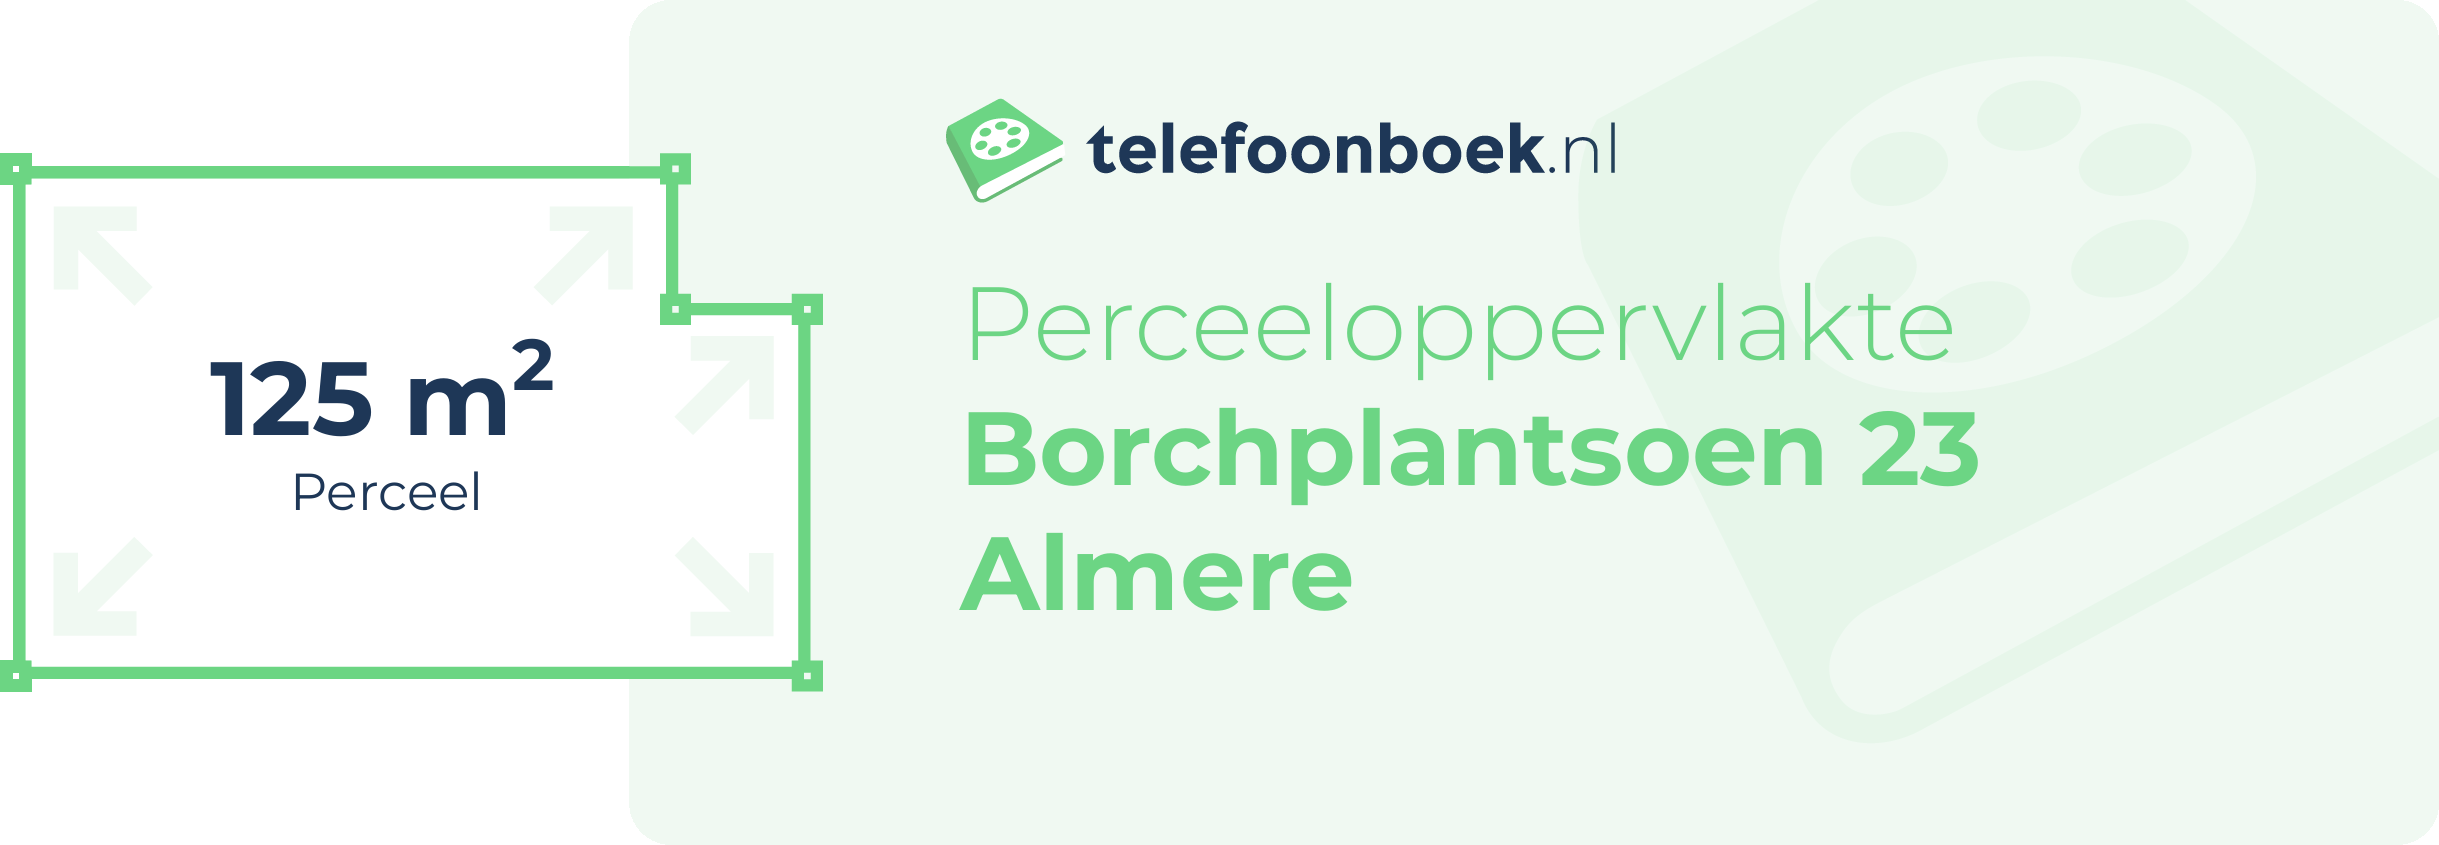 Perceeloppervlakte Borchplantsoen 23 Almere